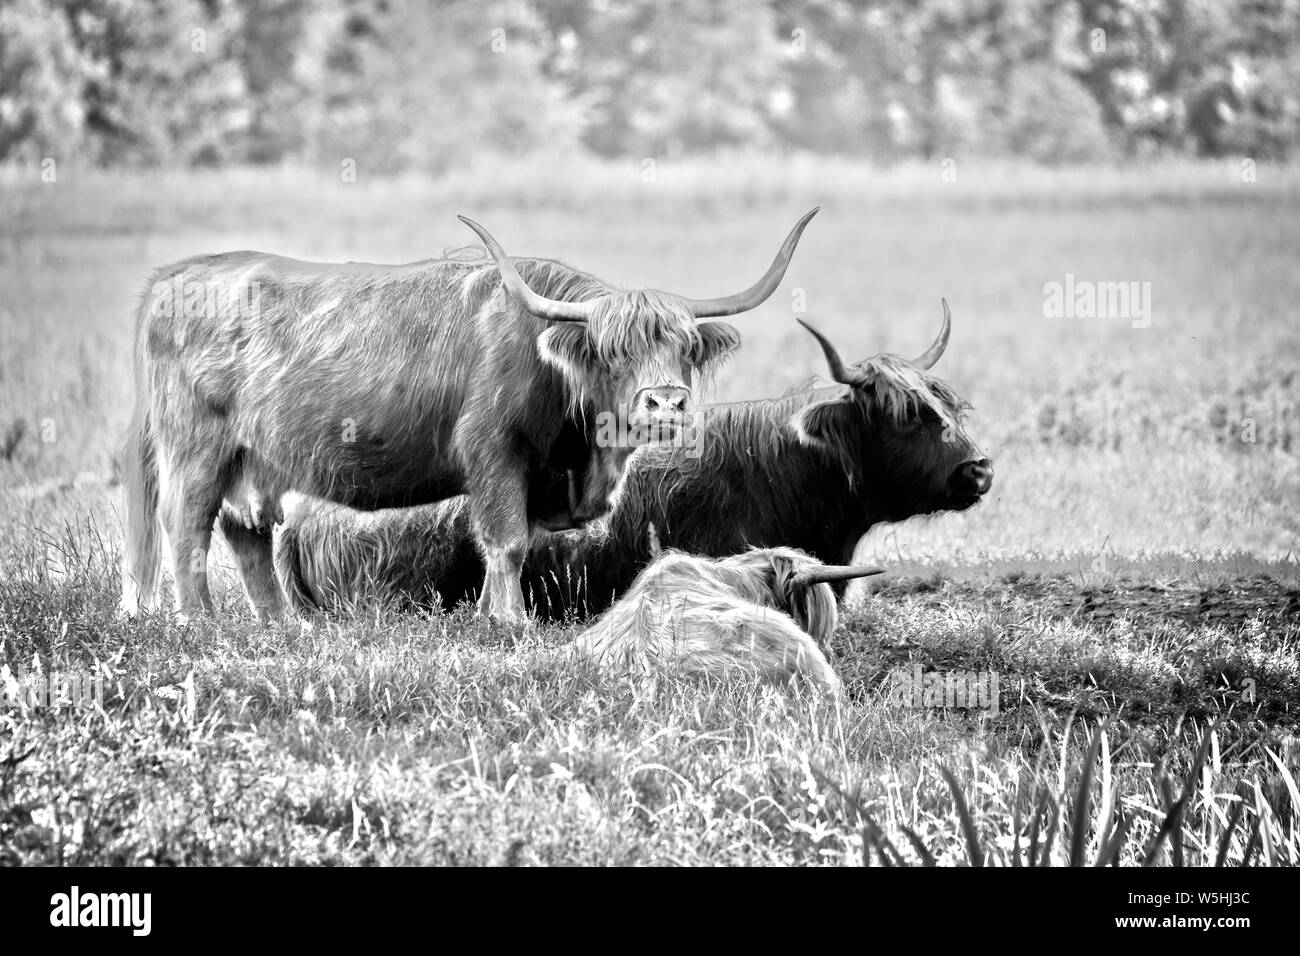 Les vaches Highland cattle dans les pâturages de la famille, image en noir et blanc. Les vaches Highland cattle ont longues cornes et long wavy couches. Ils ont été créés dans l'highla Banque D'Images